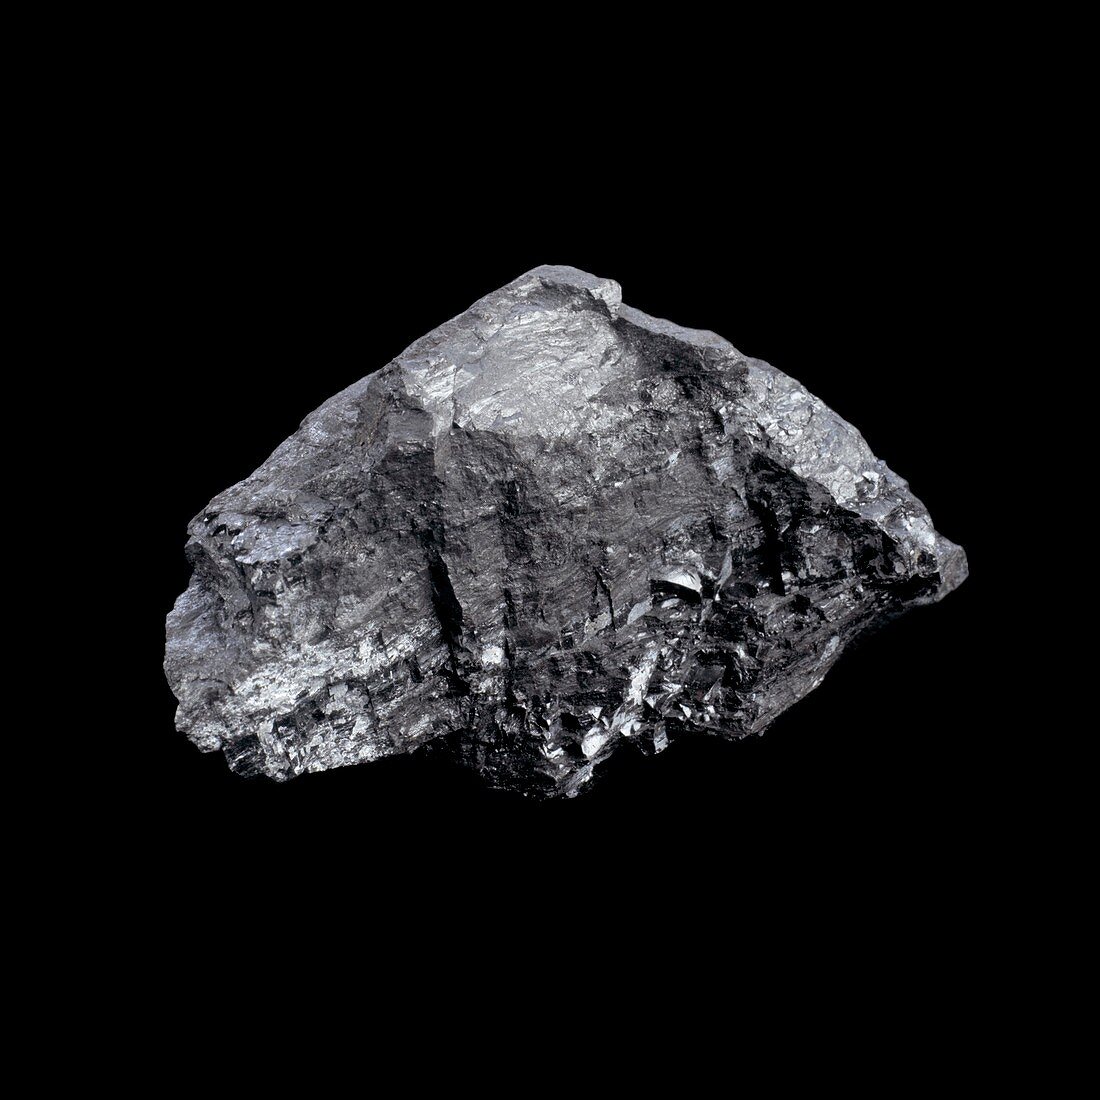 Sample of coal